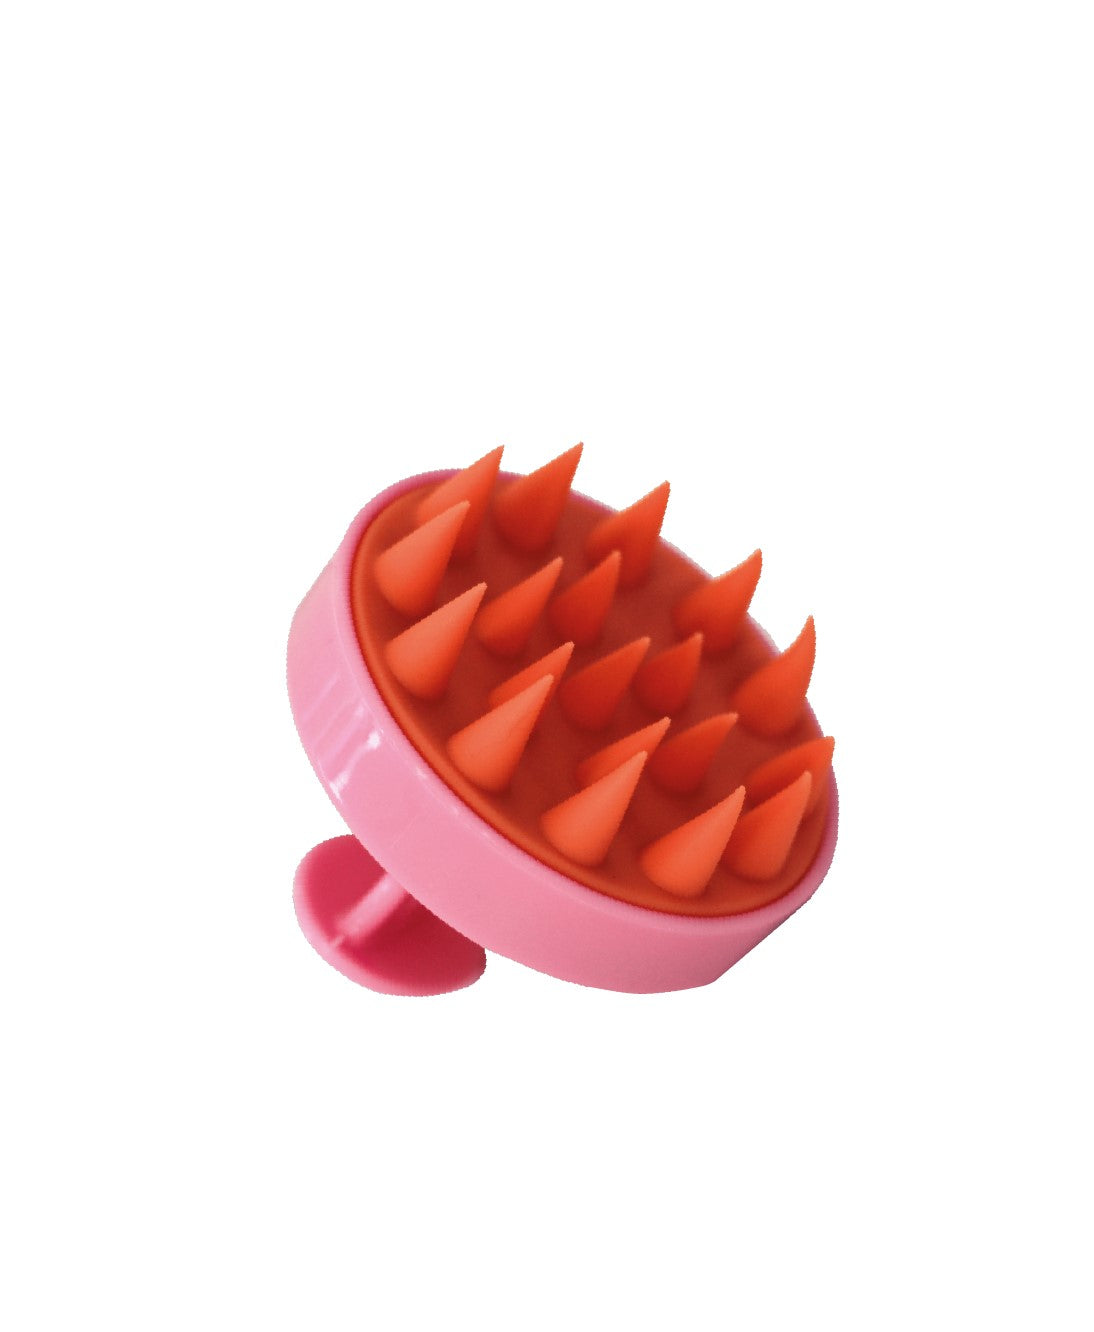 Cepillo masajeador rosa en silicona. Limpia, favorece la irrigación sanguínea y dinamiza el crecimiento del pelo